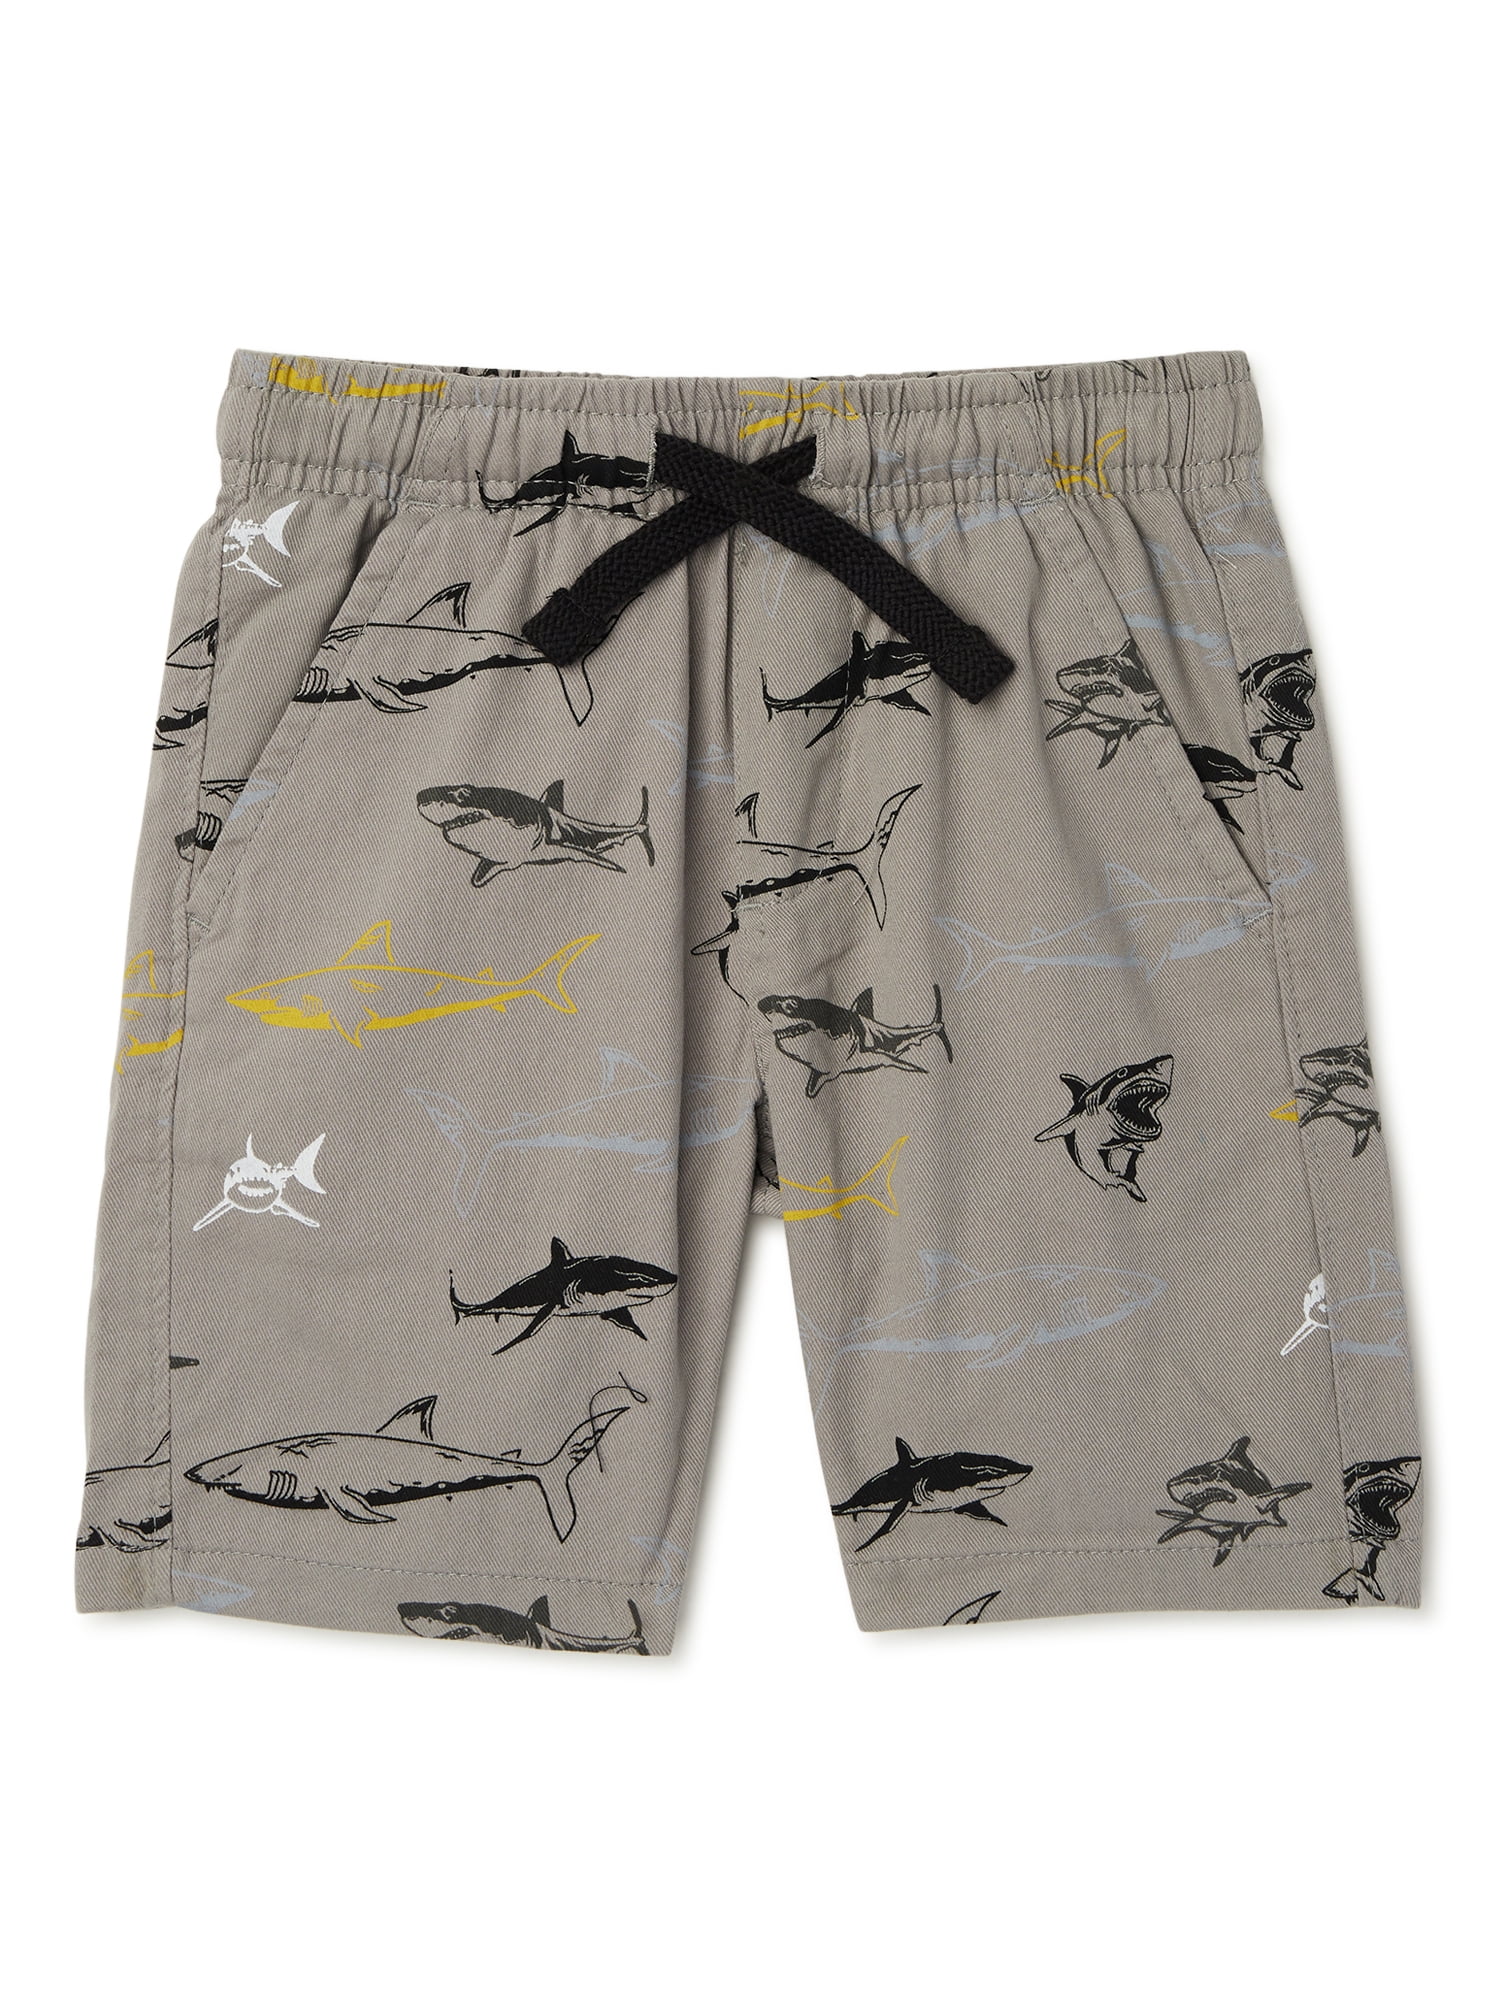 NWT Oshkosh Boy Camo Active Shorts Varies shade of gray 4,5,6,7,10/12